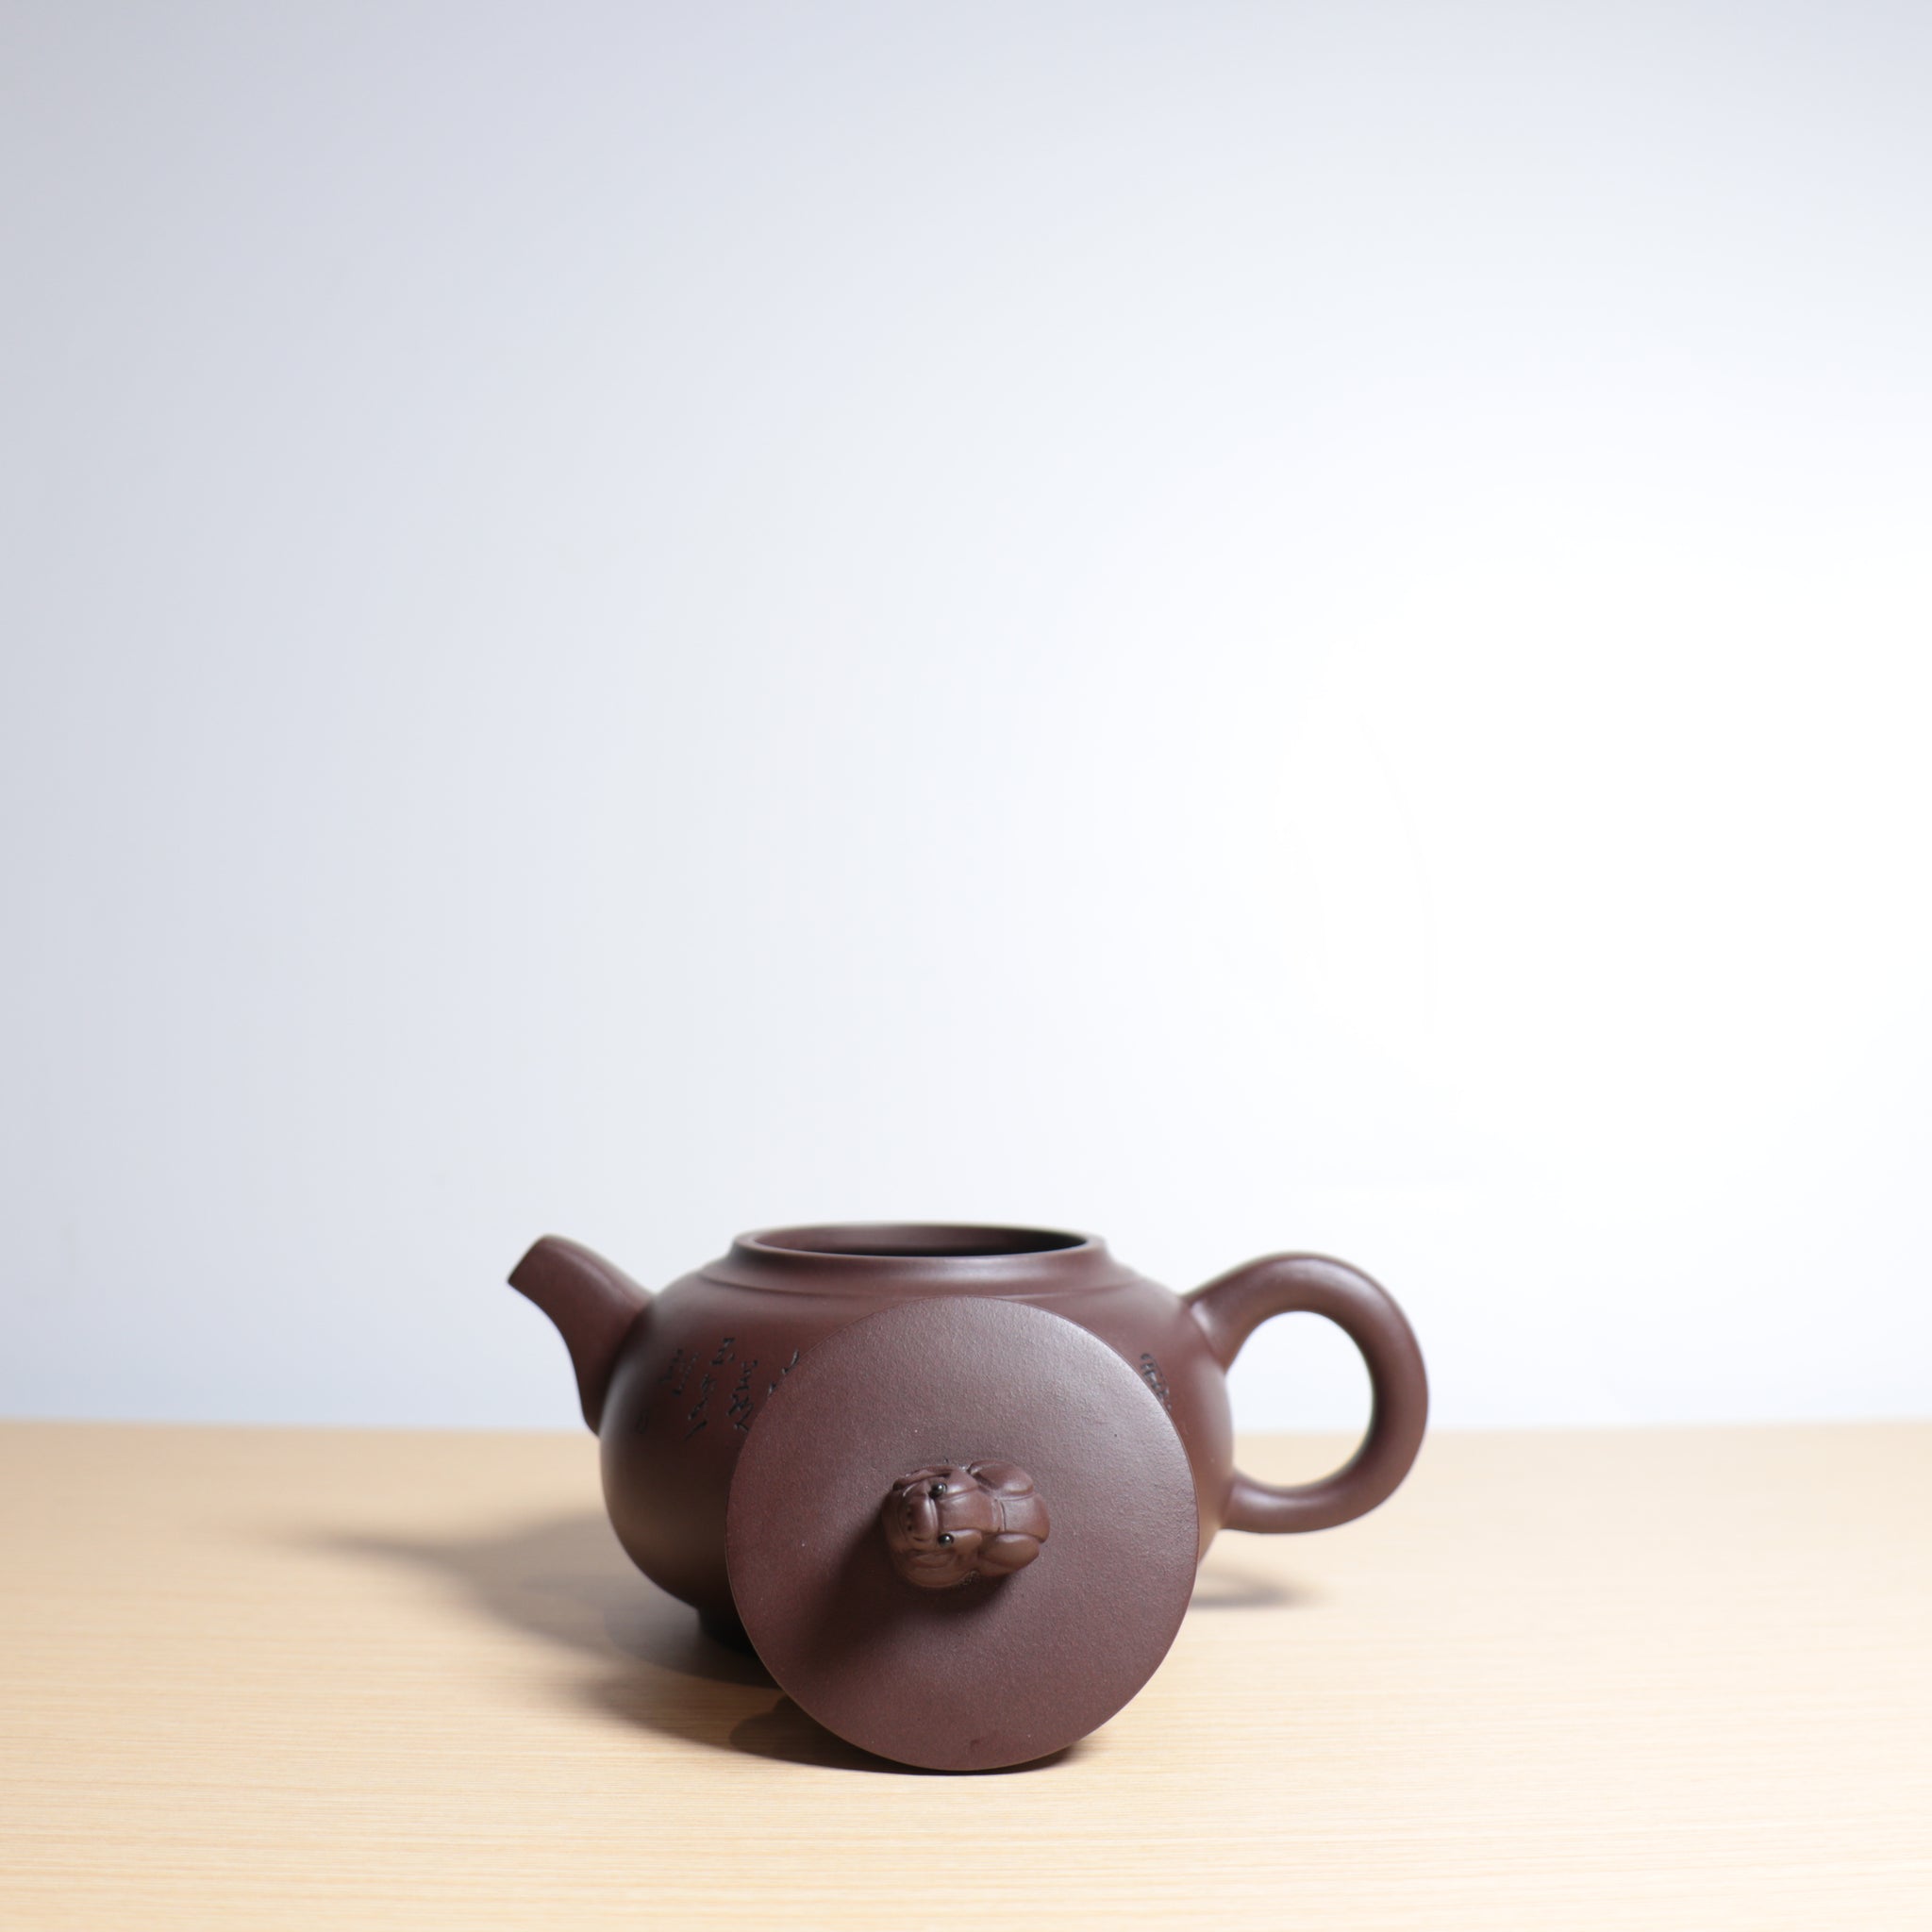 【瑞獸】紫泥雕刻紫砂茶壺